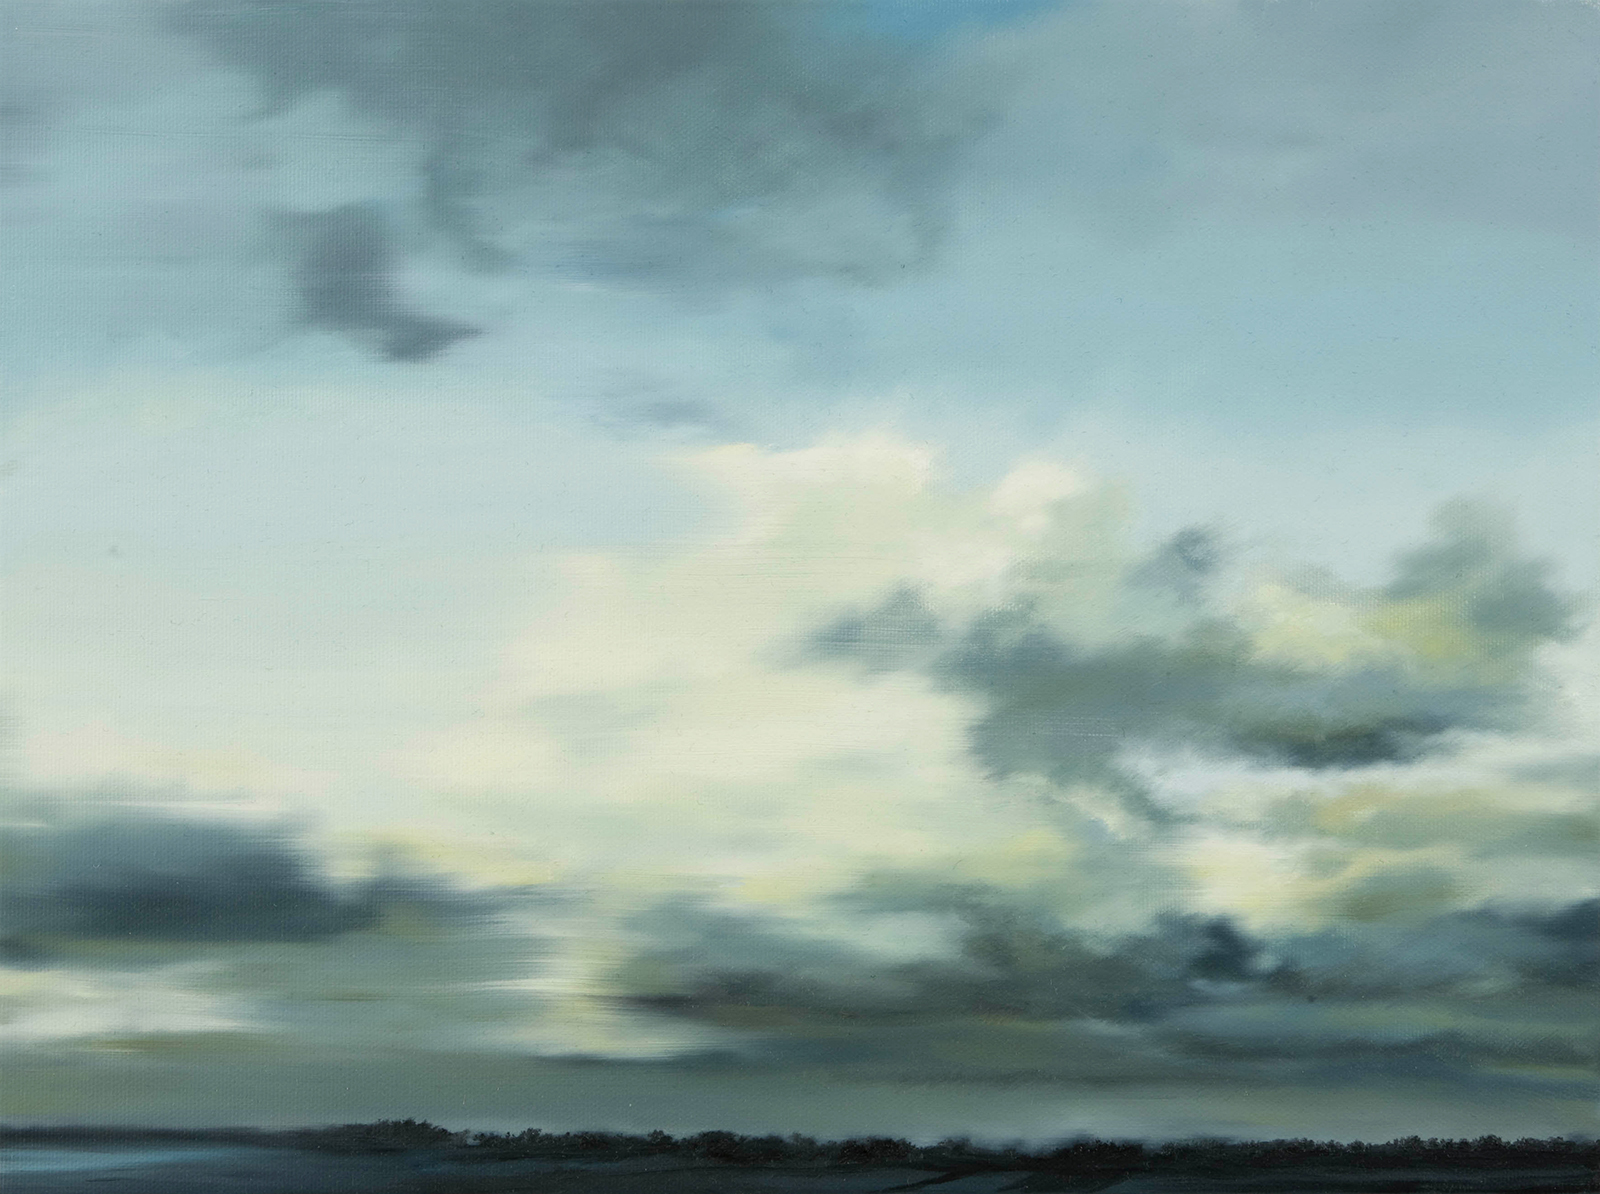 Nordseeküste 2005, 30 x 40 cm, Öl auf Leinwand   North Sea Coast 2005, oil on canvas